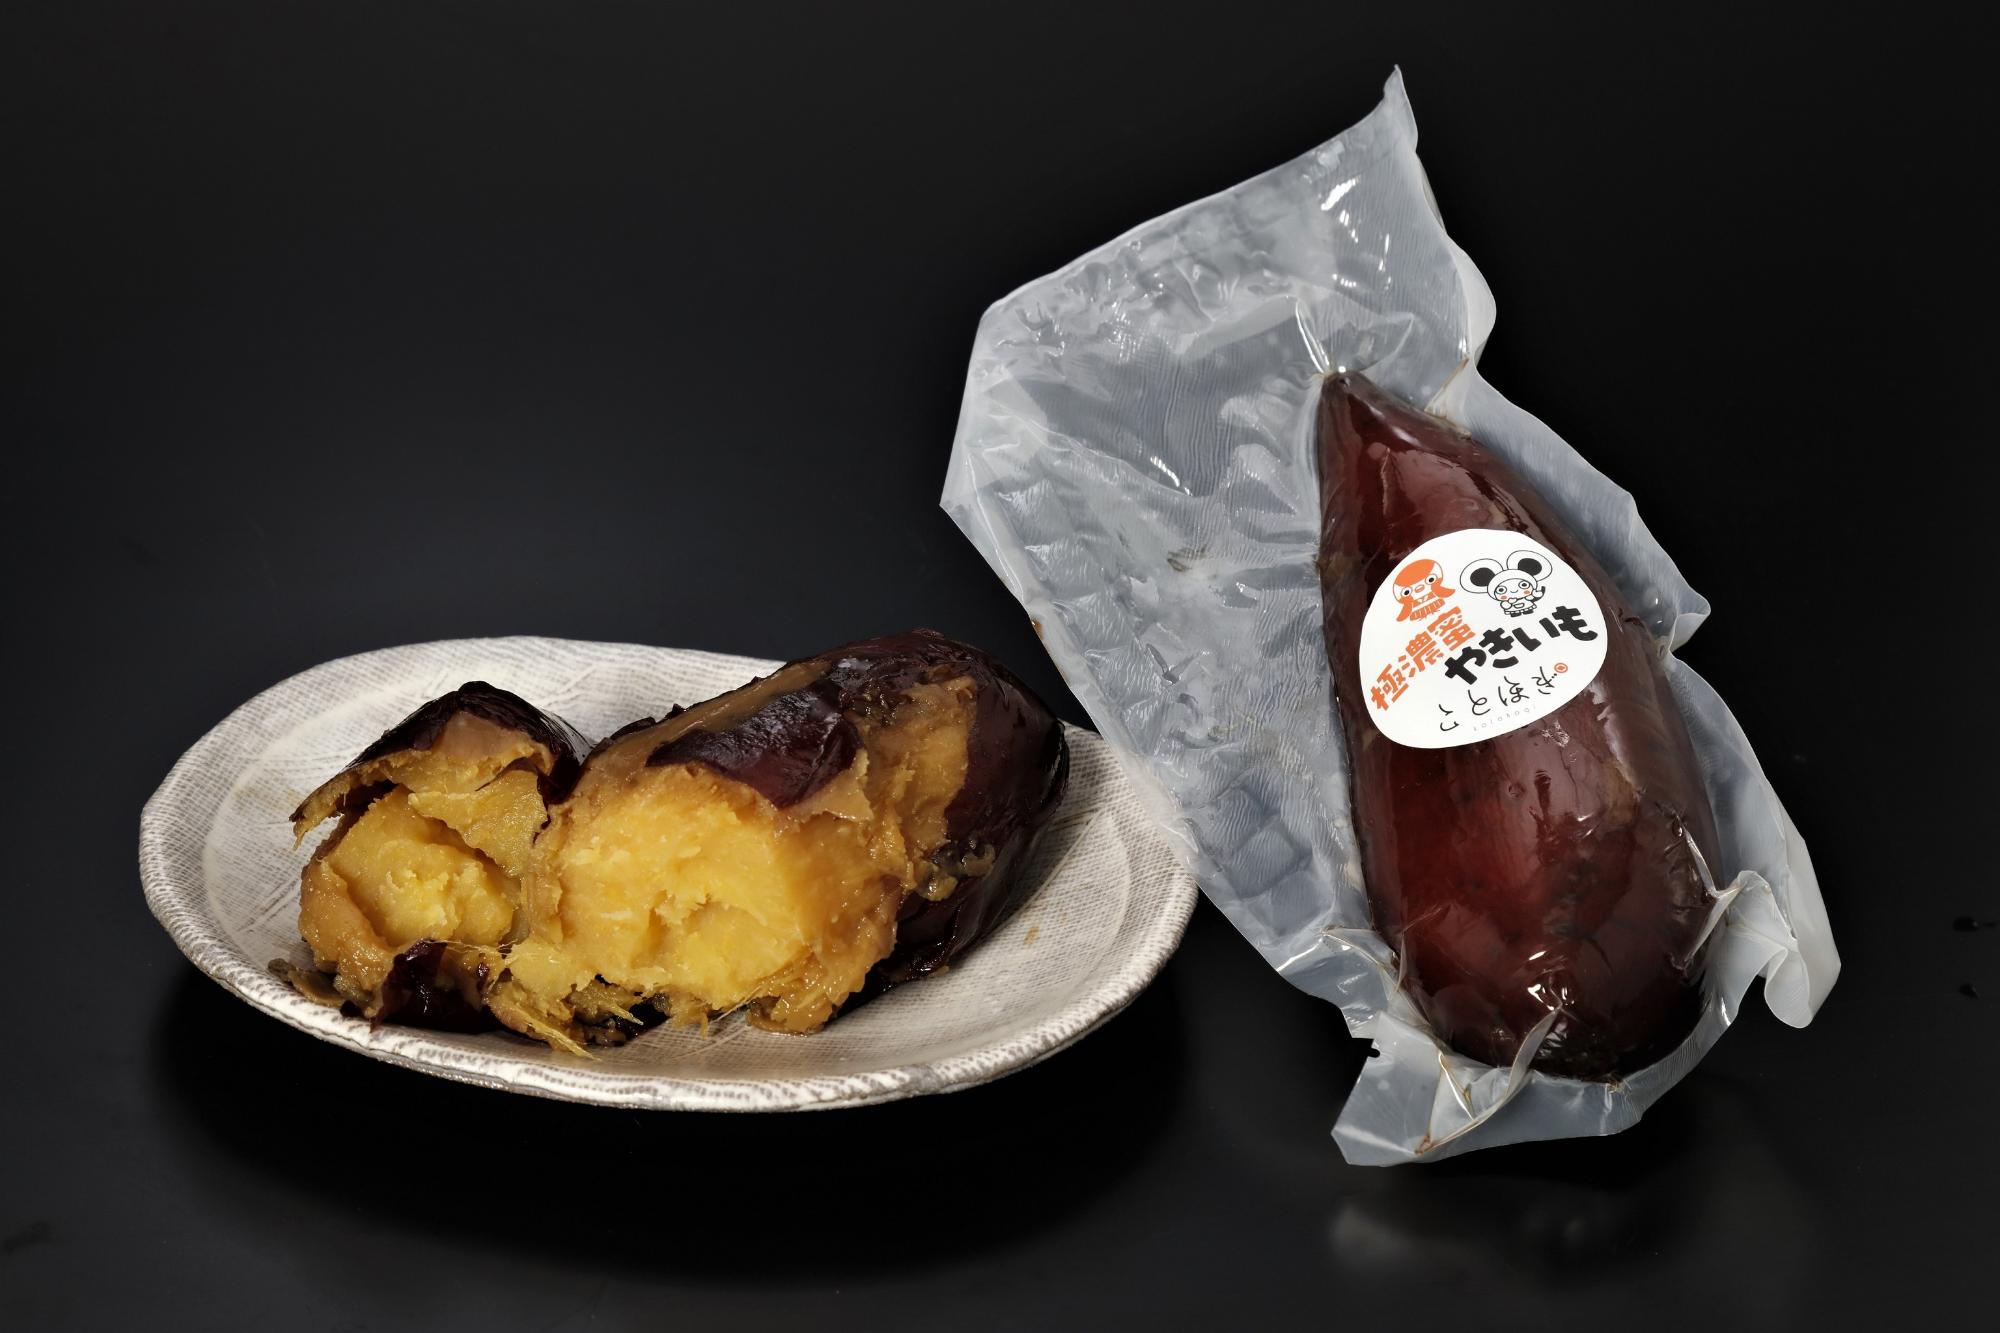 株式会社リマルヤの、前橋産サツマイモを焼き上げた「極濃蜜やきいも」という商品の写真